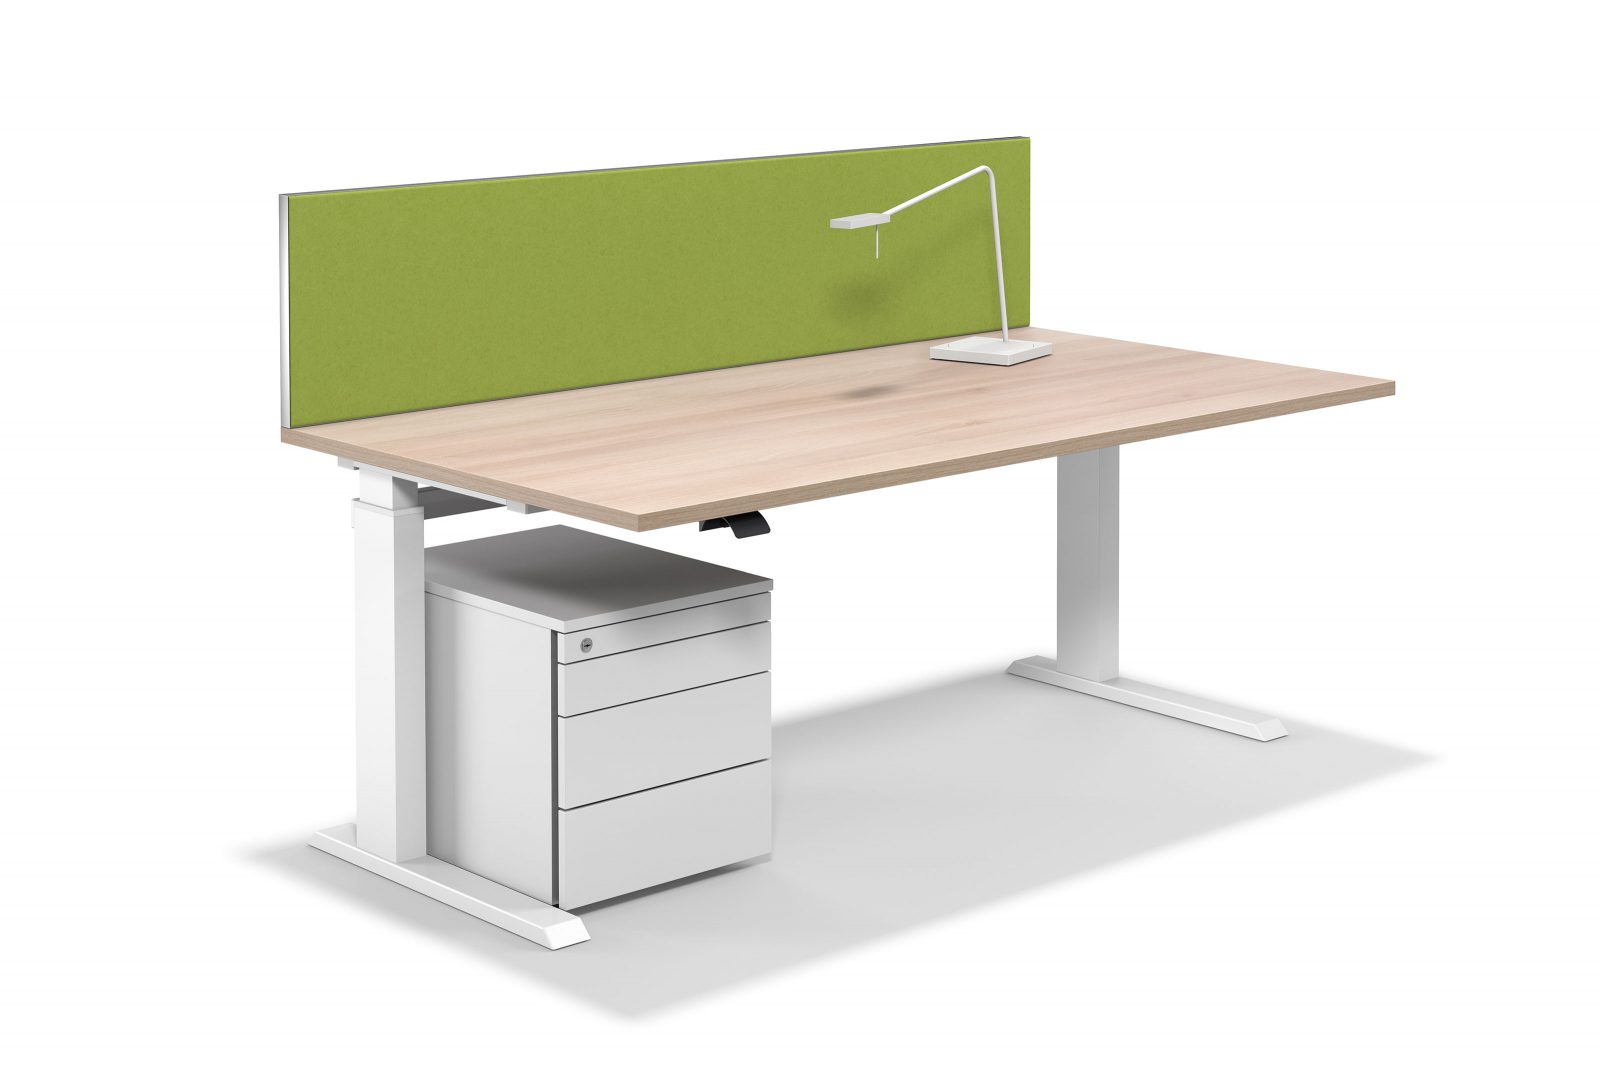 Freisteller zeigt einen höhenverstellbaren Schreibtisch mit einer leuchtend grünen Tischaufsatzwand, einem weißen Rollcontainer und einer Schreibtischleuchte